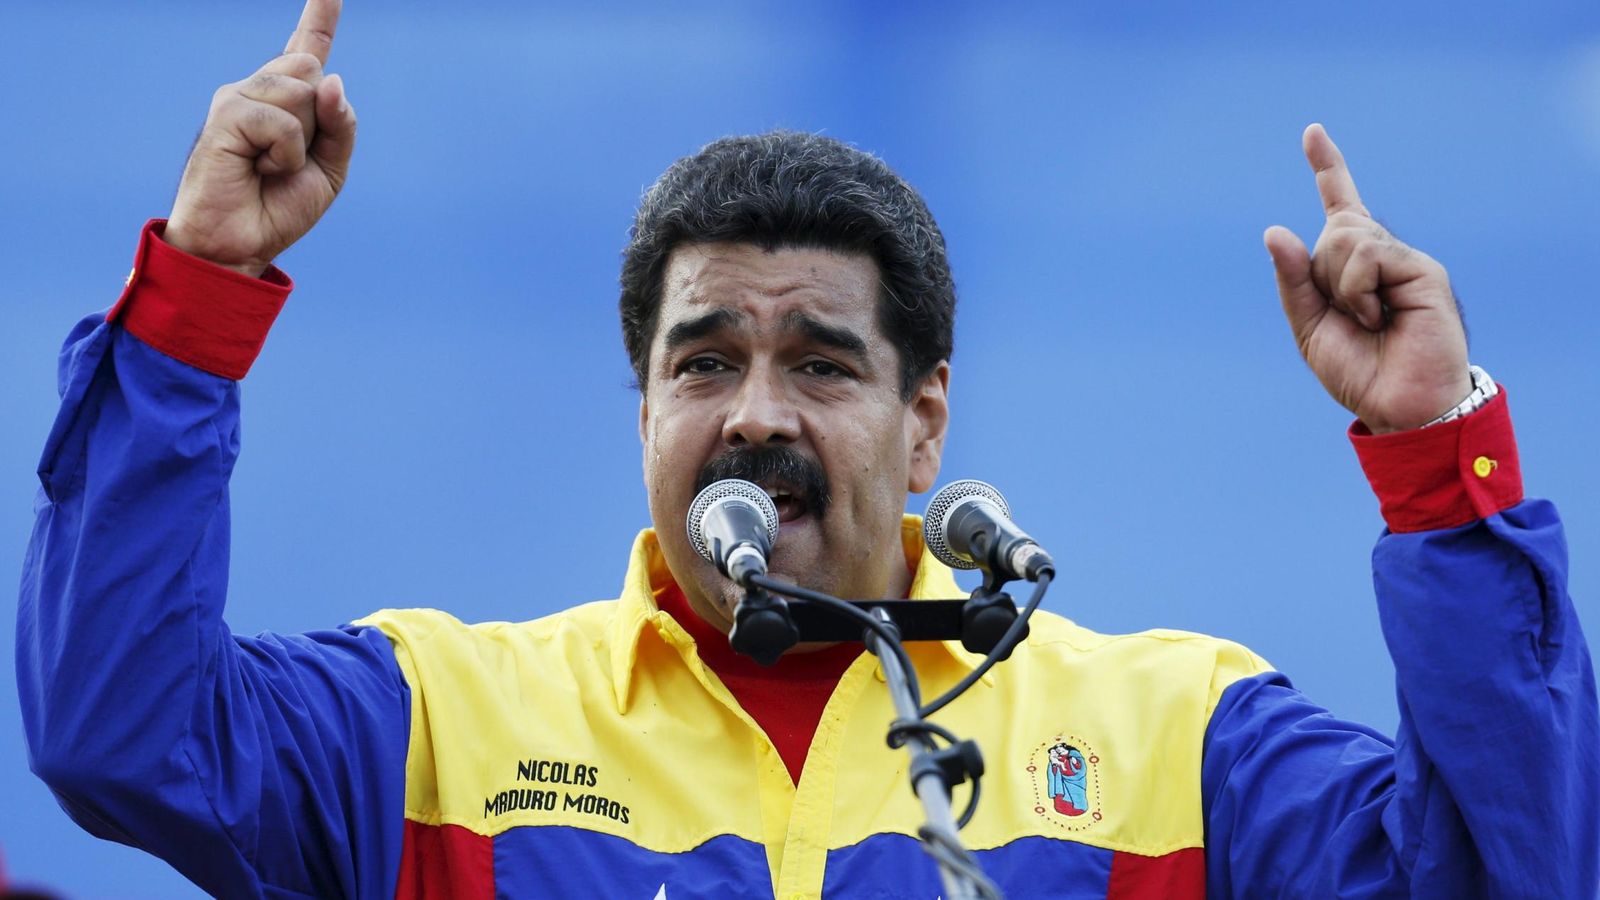 Foto: Nicolás Maduro durante un acto de la campaña electoral en Caracas. (Reuters)